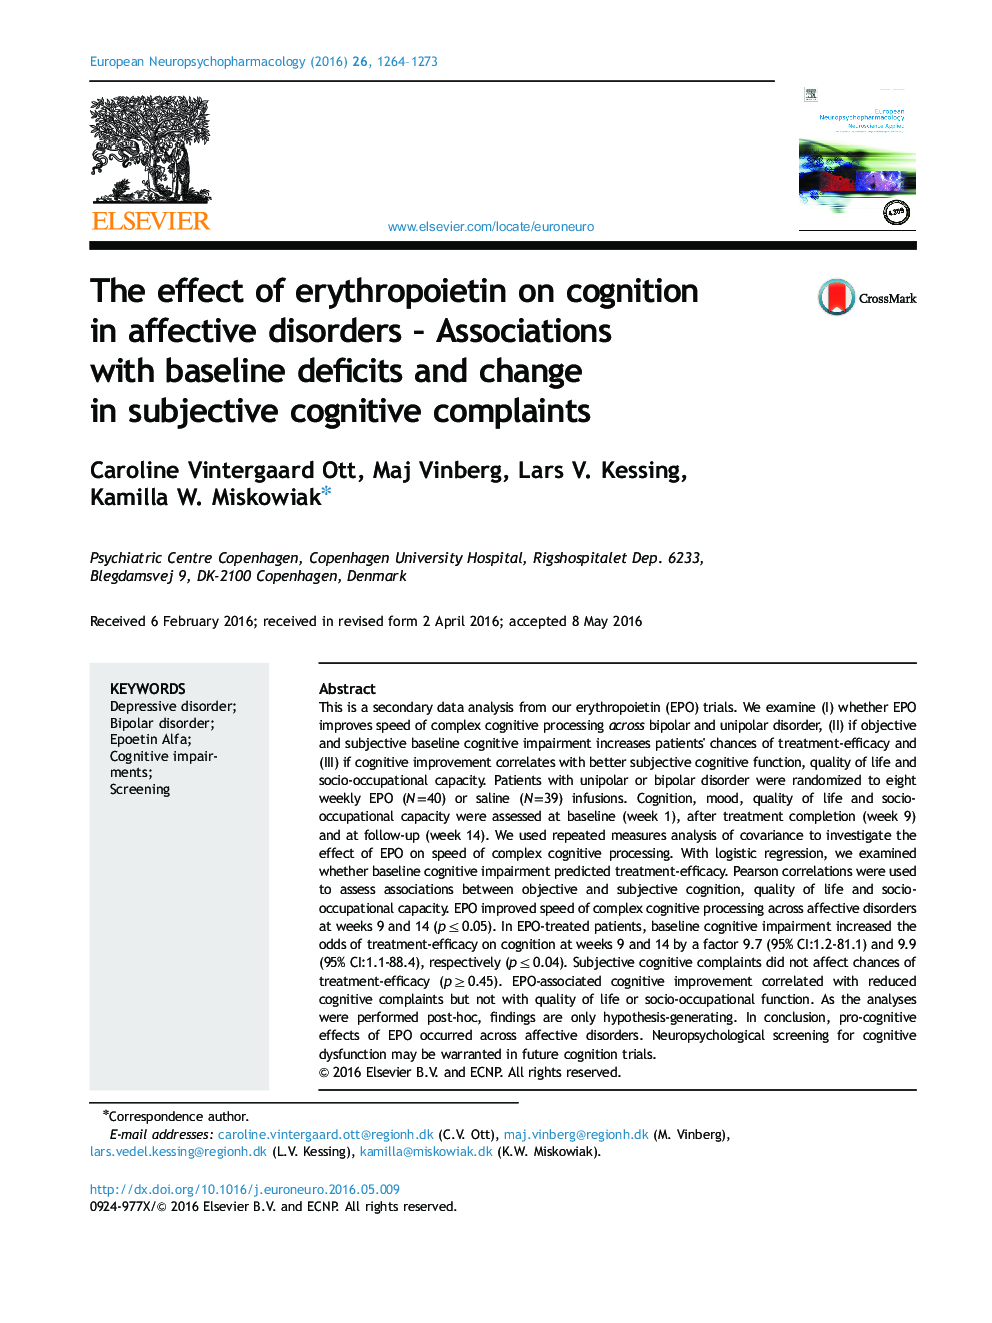 اثر اریتروپویتین بر شناخت در اختلالات عاطفی - ارتباط با اختلالات پایه و تغییر در شکایات شناختی ذهنی